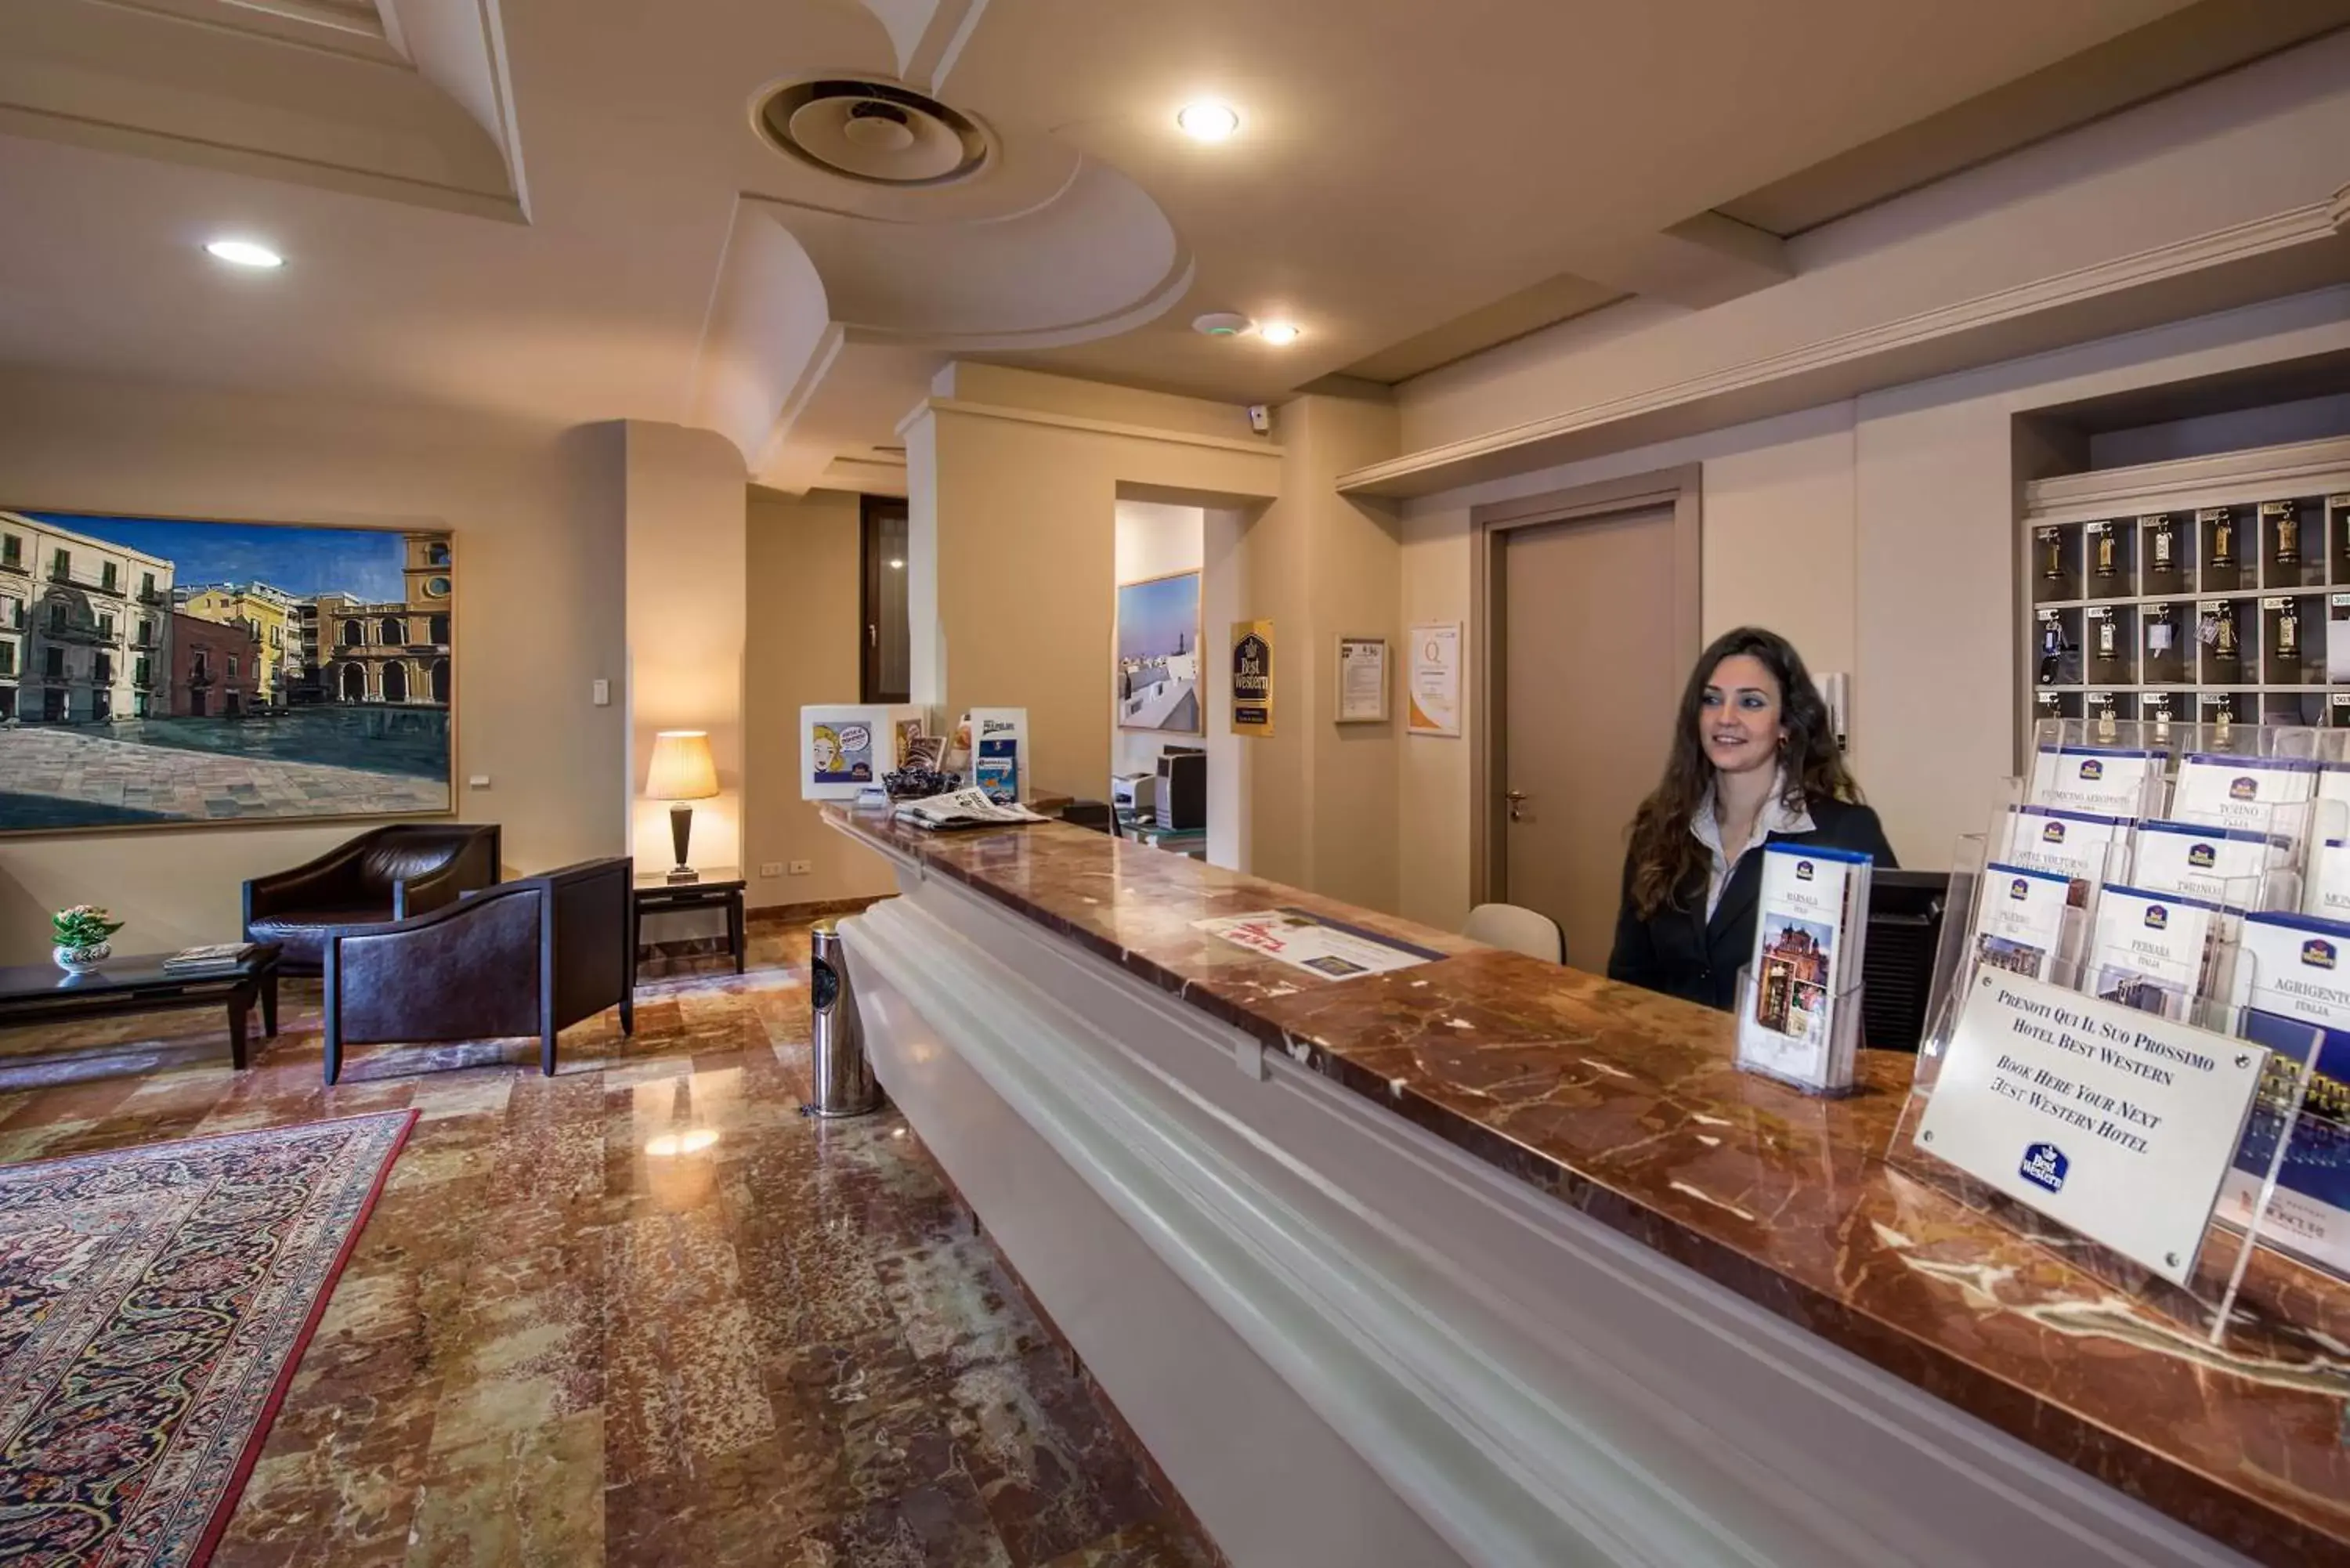 Lobby or reception, Lobby/Reception in Best Western Hotel Stella d'Italia